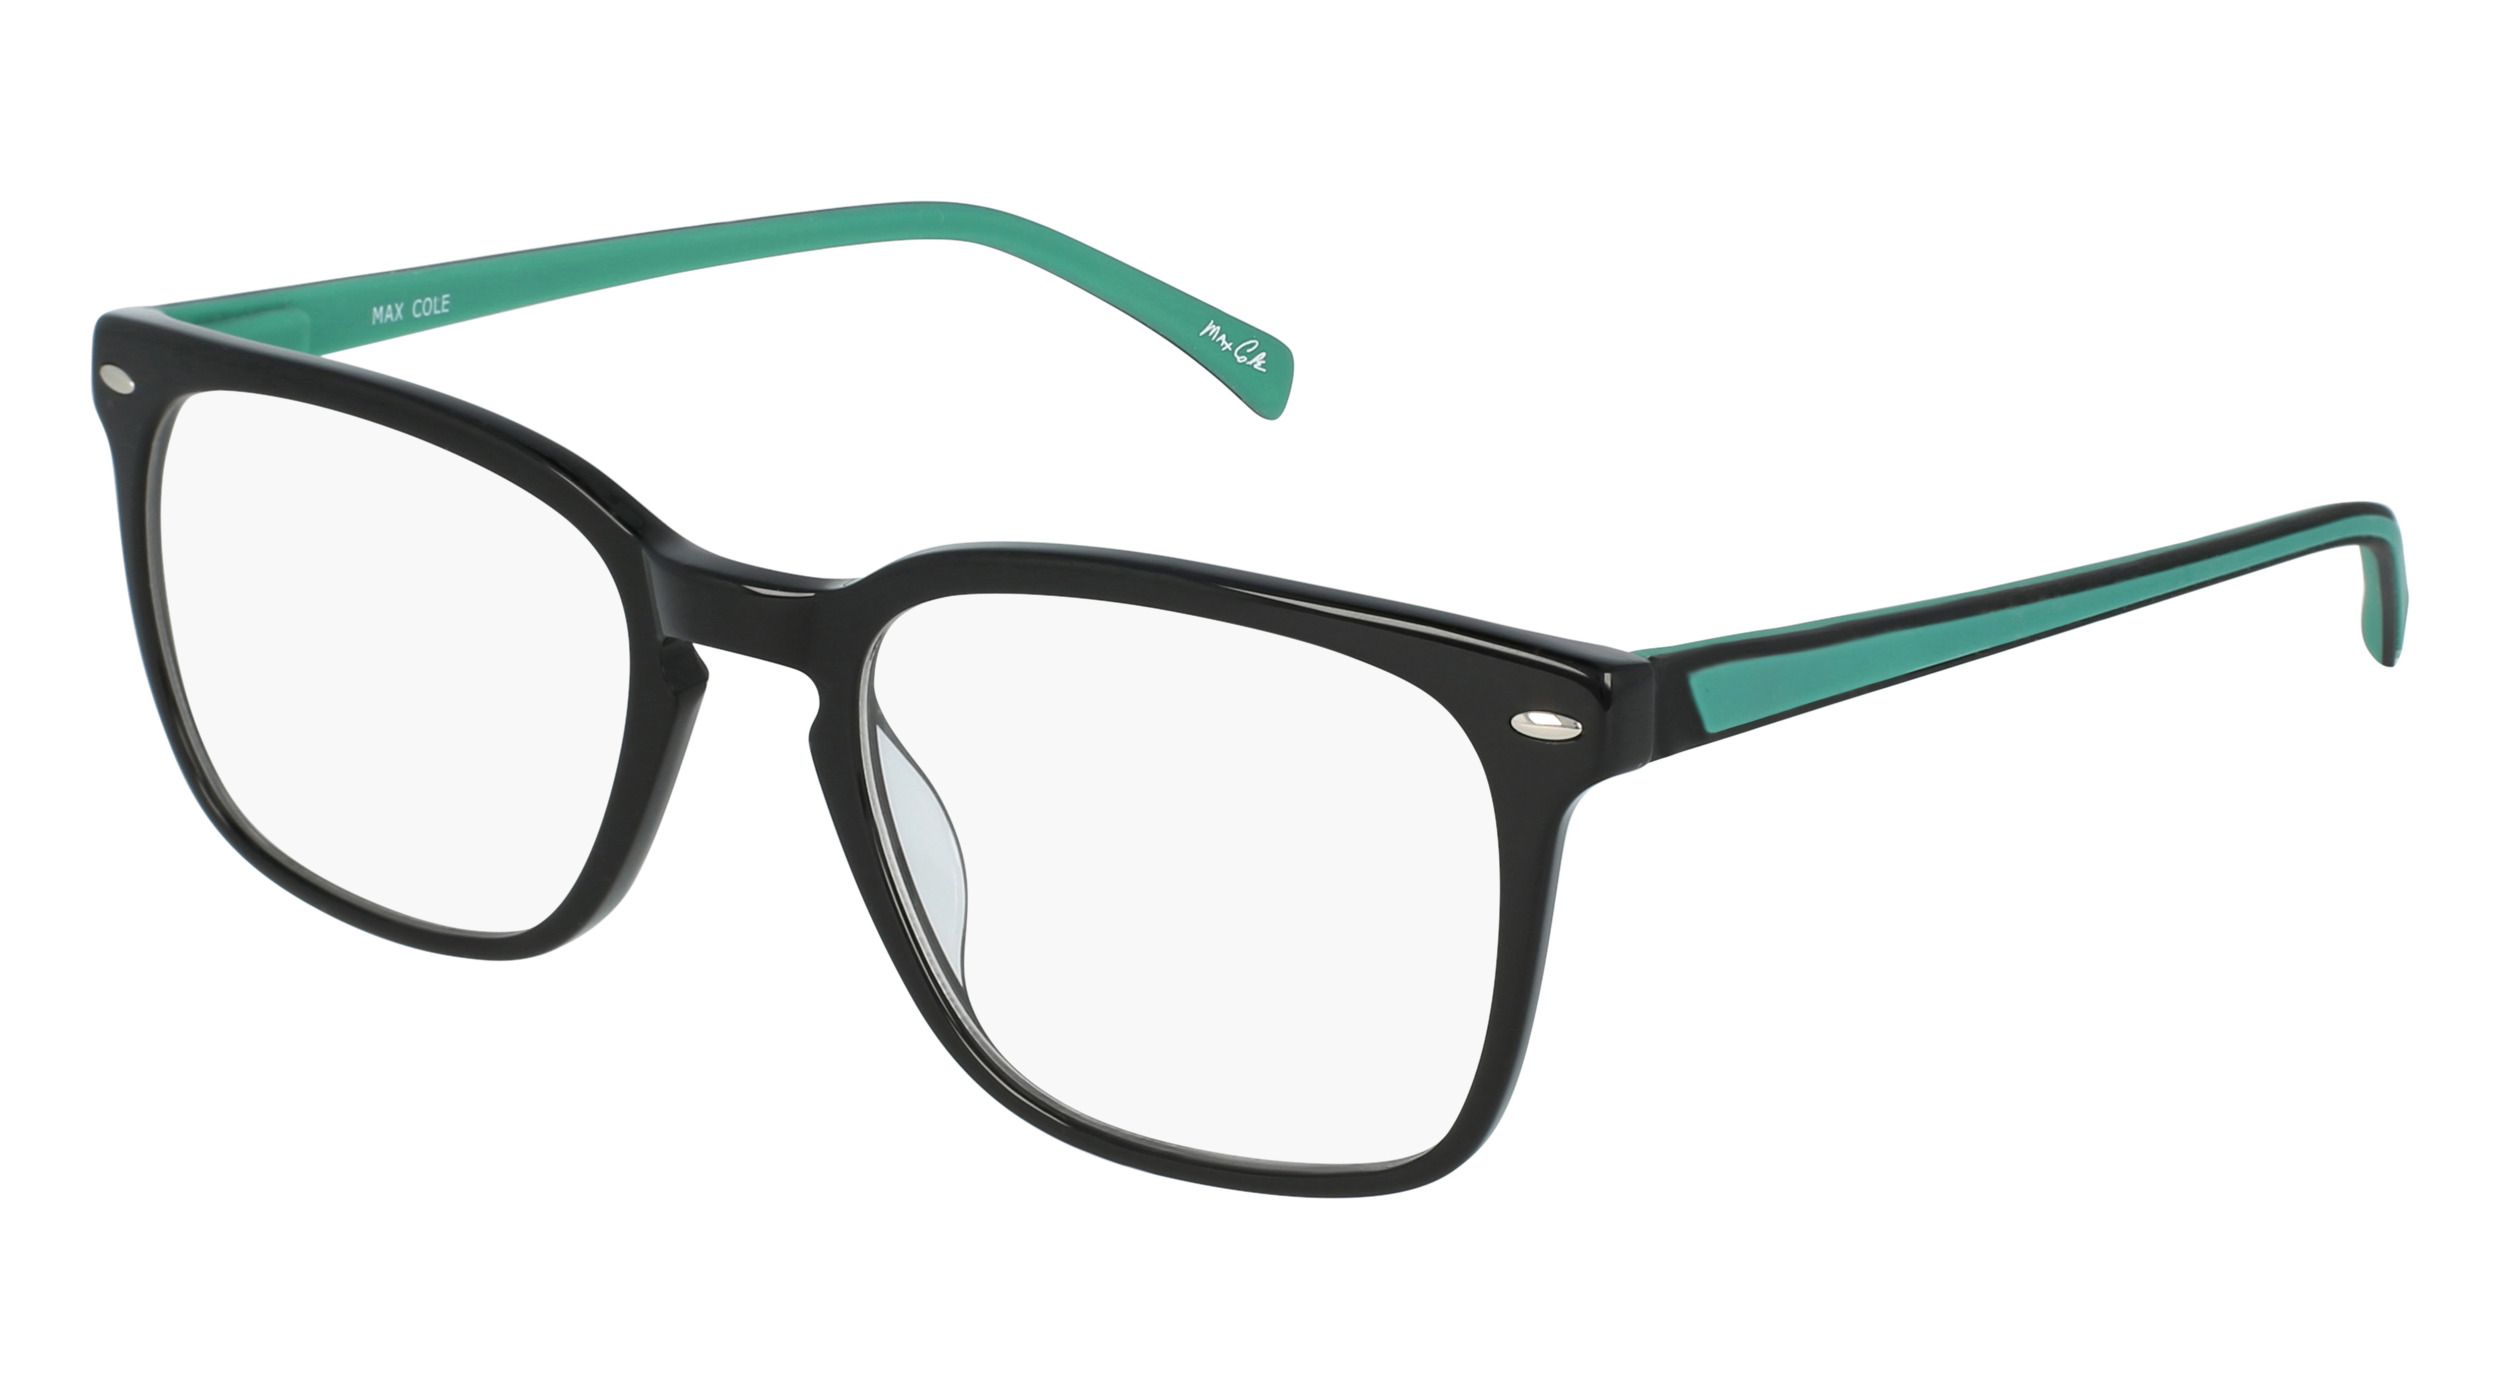 M MC 1500 men's eyeglasses (from the side)